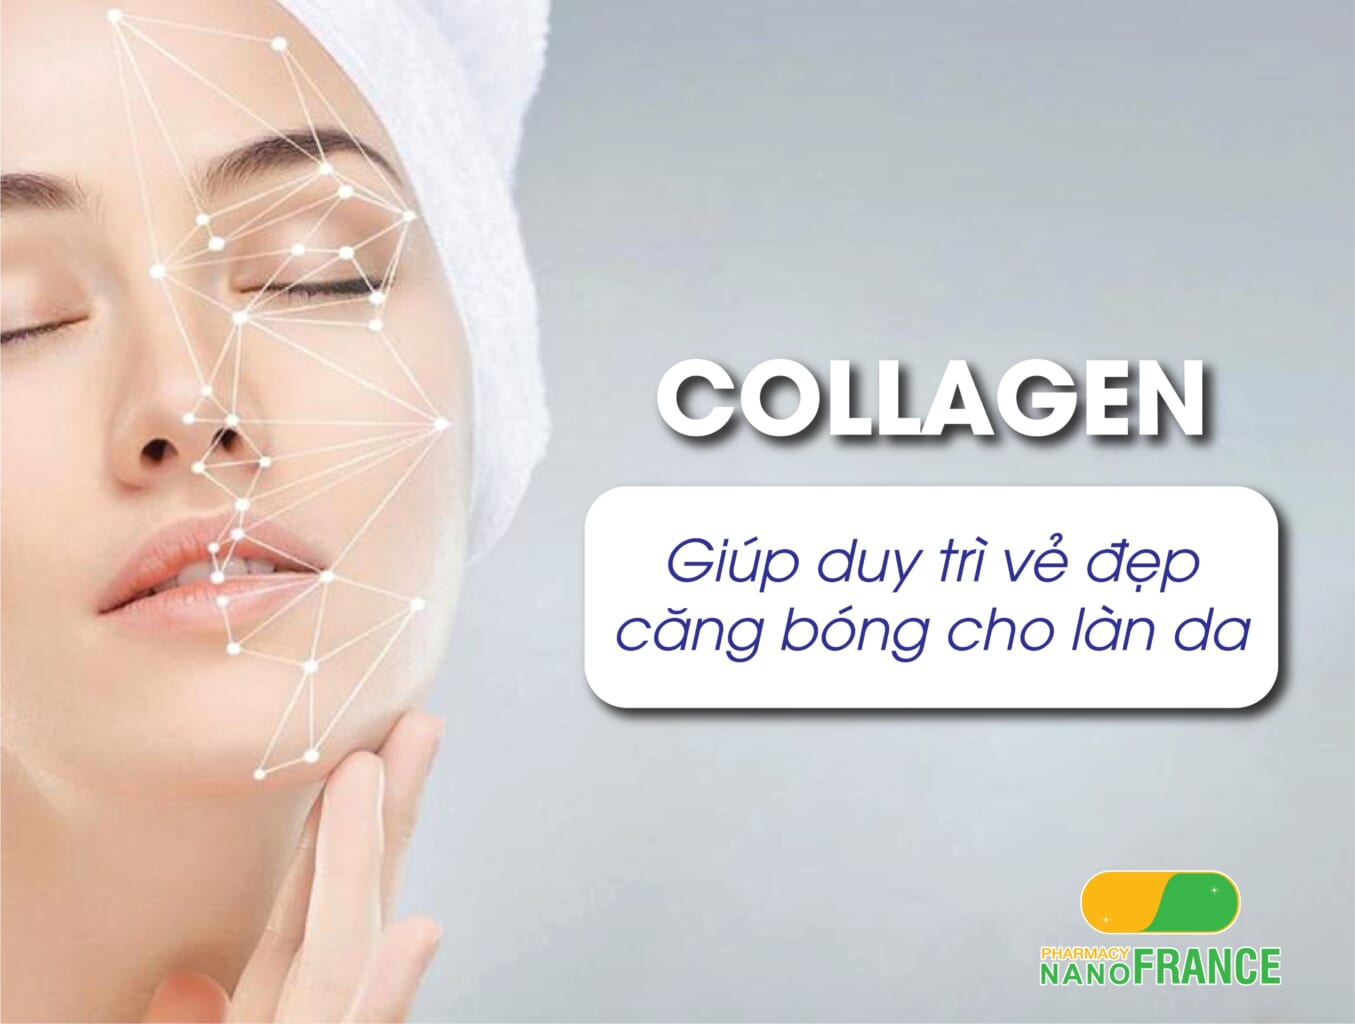 Collagen giúp duy trì vẻ đẹp, căng bóng làn da